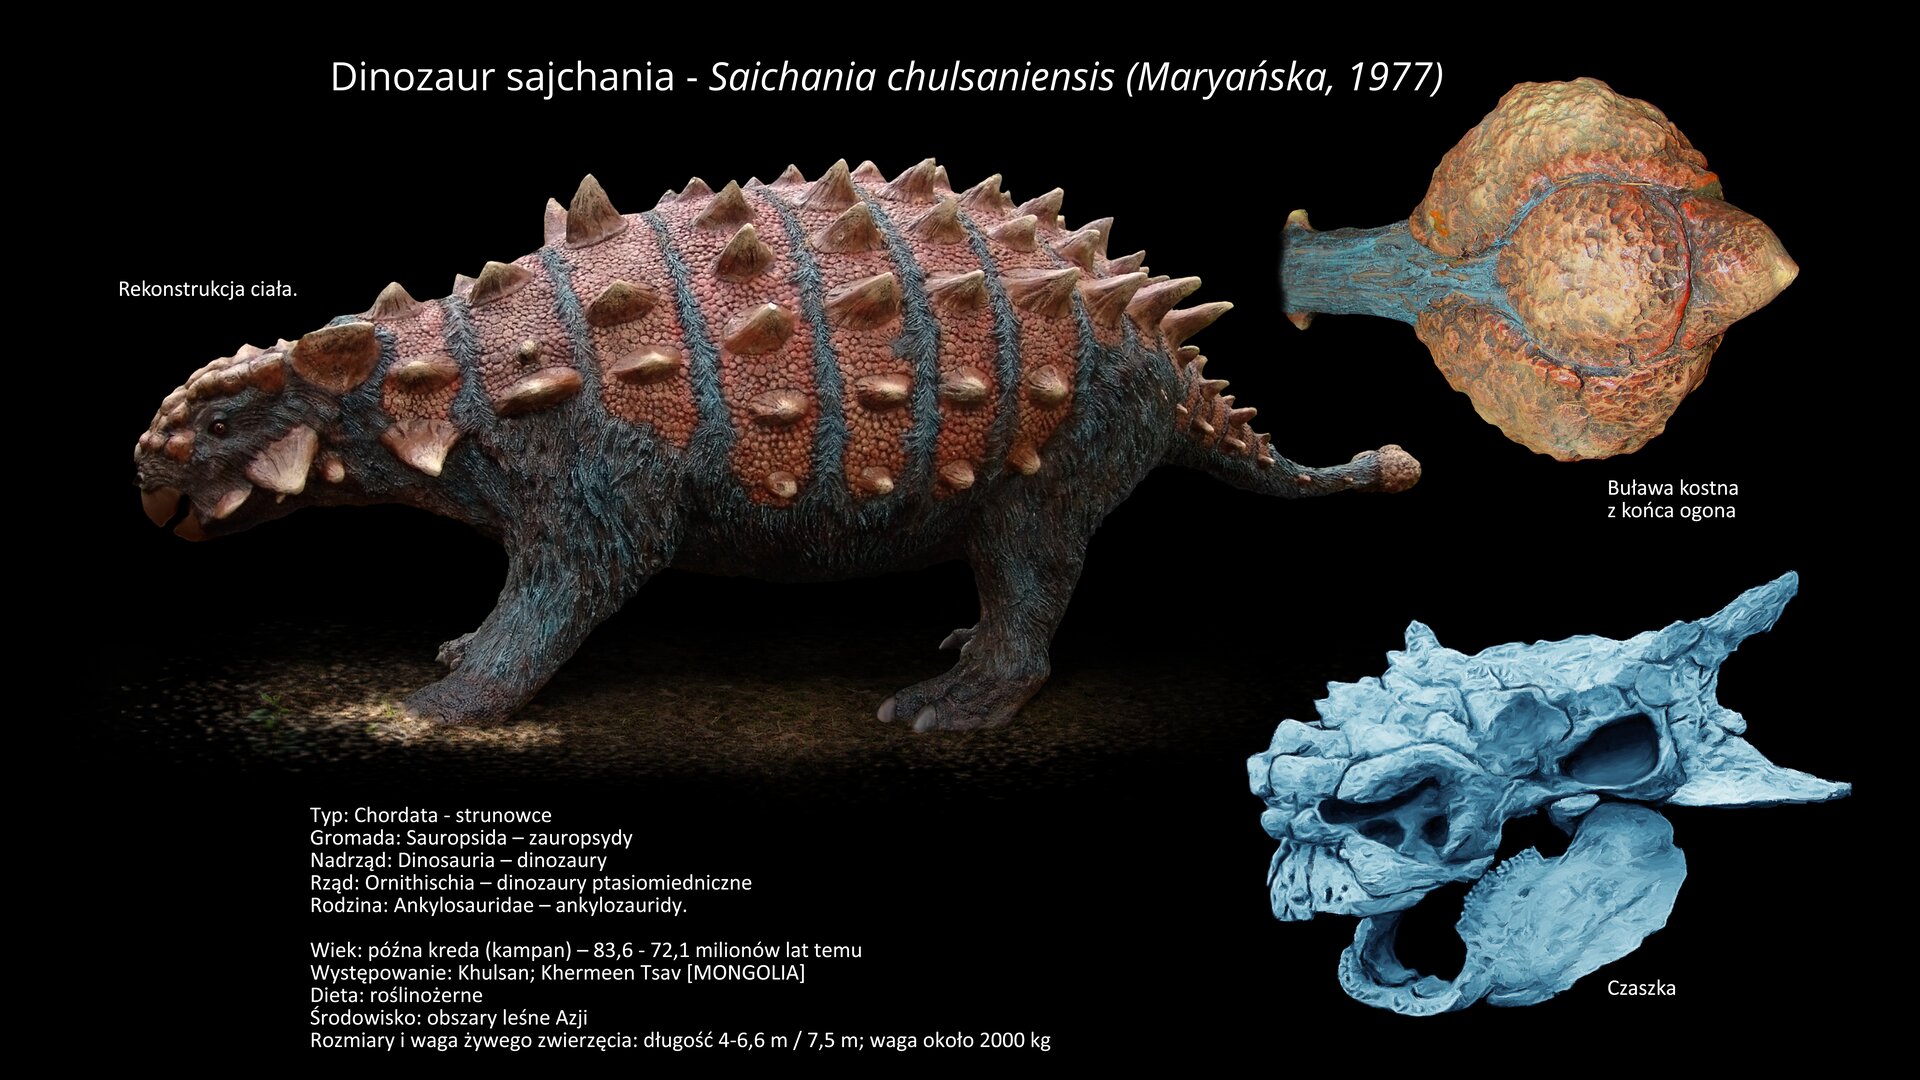 Na ilustracji model dinozaura Saichania. Dinozaur długości od czterech do siedmiu metrów. Na grzbiecie brązowy. Pod spodem szary. Na grzbiecie ma kostny pancerz, a na ogonie – ciężką, kostną buławę. Z prawej strony powiększony model kostnej buławy i model czaszki.